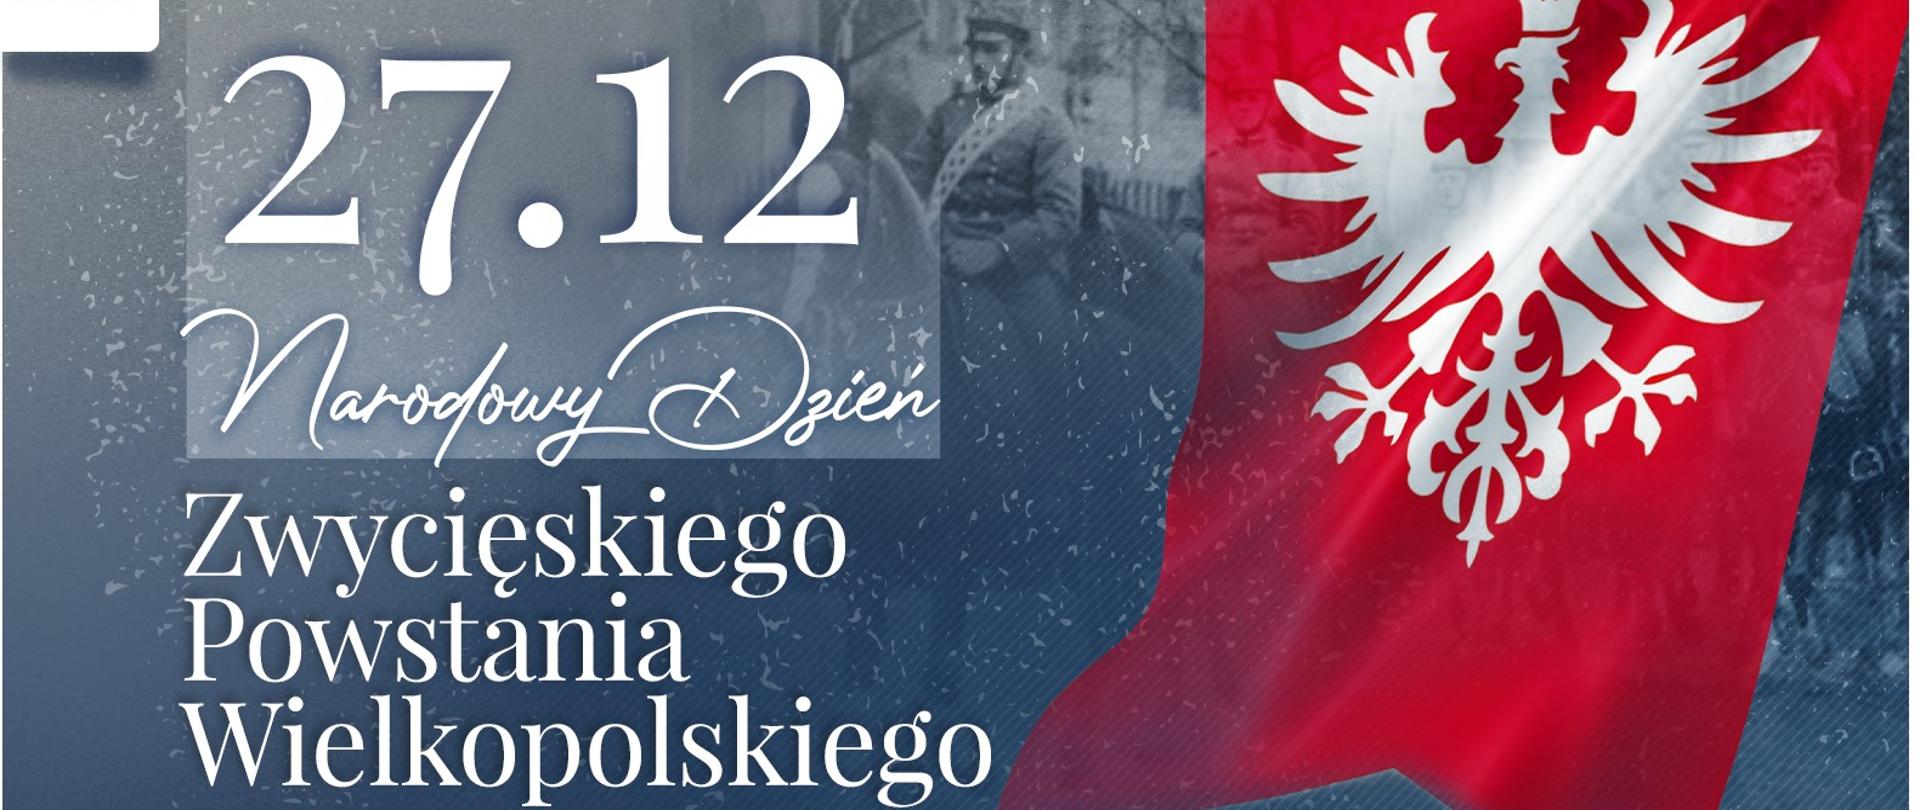 Na zdjęciu widać grafikę z napisem 27.12. Narodowy Dzień Zwycięskiego Powstania Wielkopolskiego. Po prawej stronie godło wielkopolski biały orzeł na czerwonym tle.